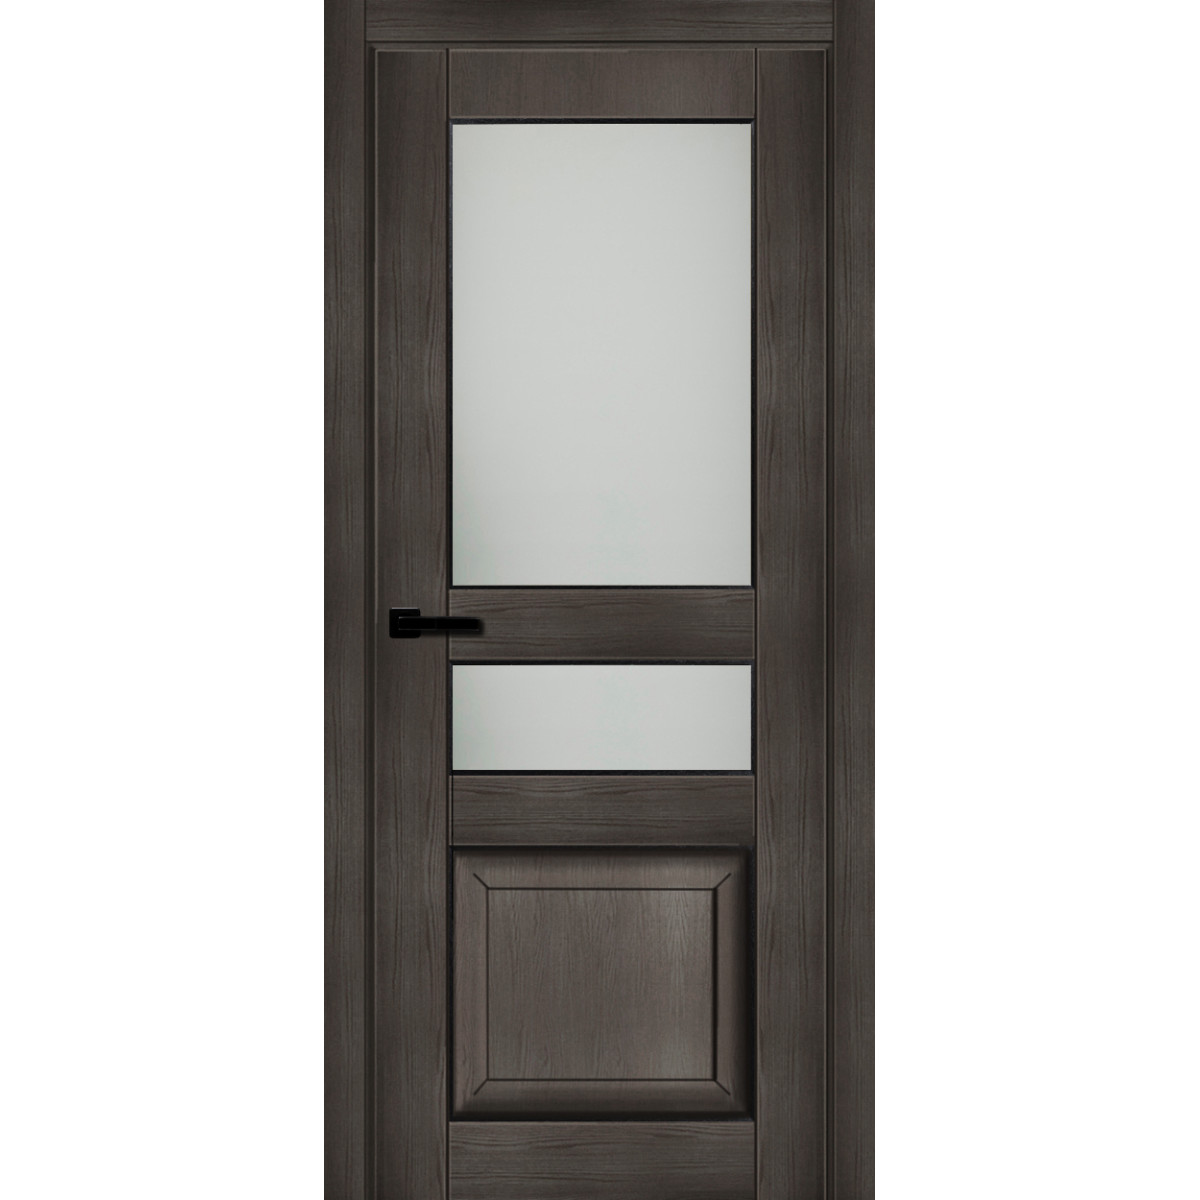 Дверь межкомнатная остеклённая с замком в комплекте Дерби 2000x600 мм CPL цвет дуб чёрный матовый